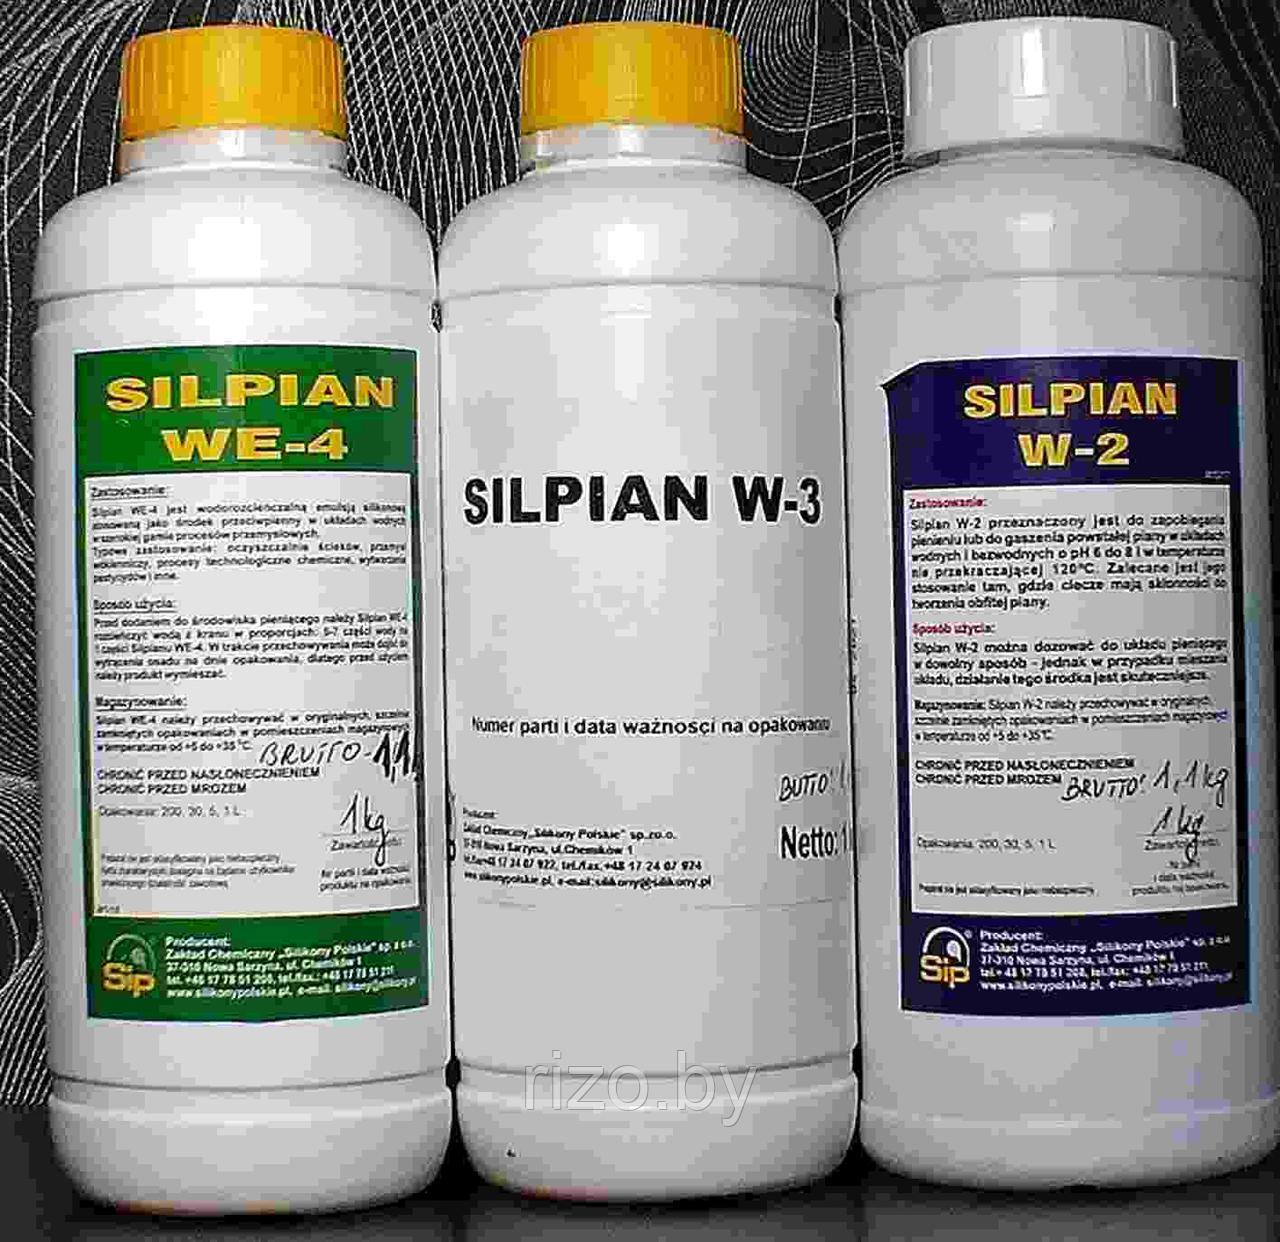 Пеногаситель SILPIAN W-2 и SILPIAN W-3 в безводных средах